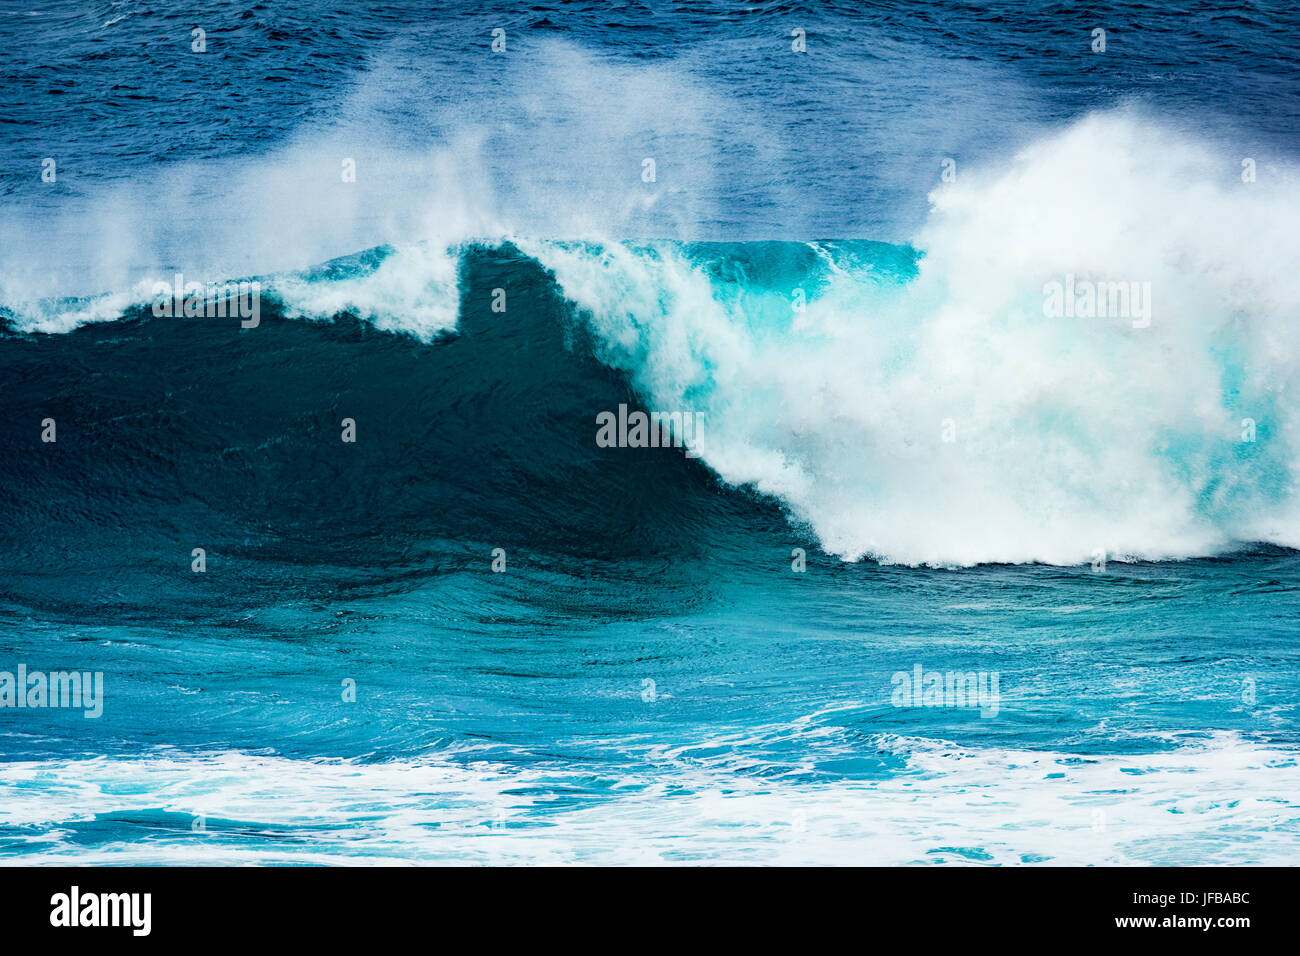 Big wave of Indian ocean Stock Photo